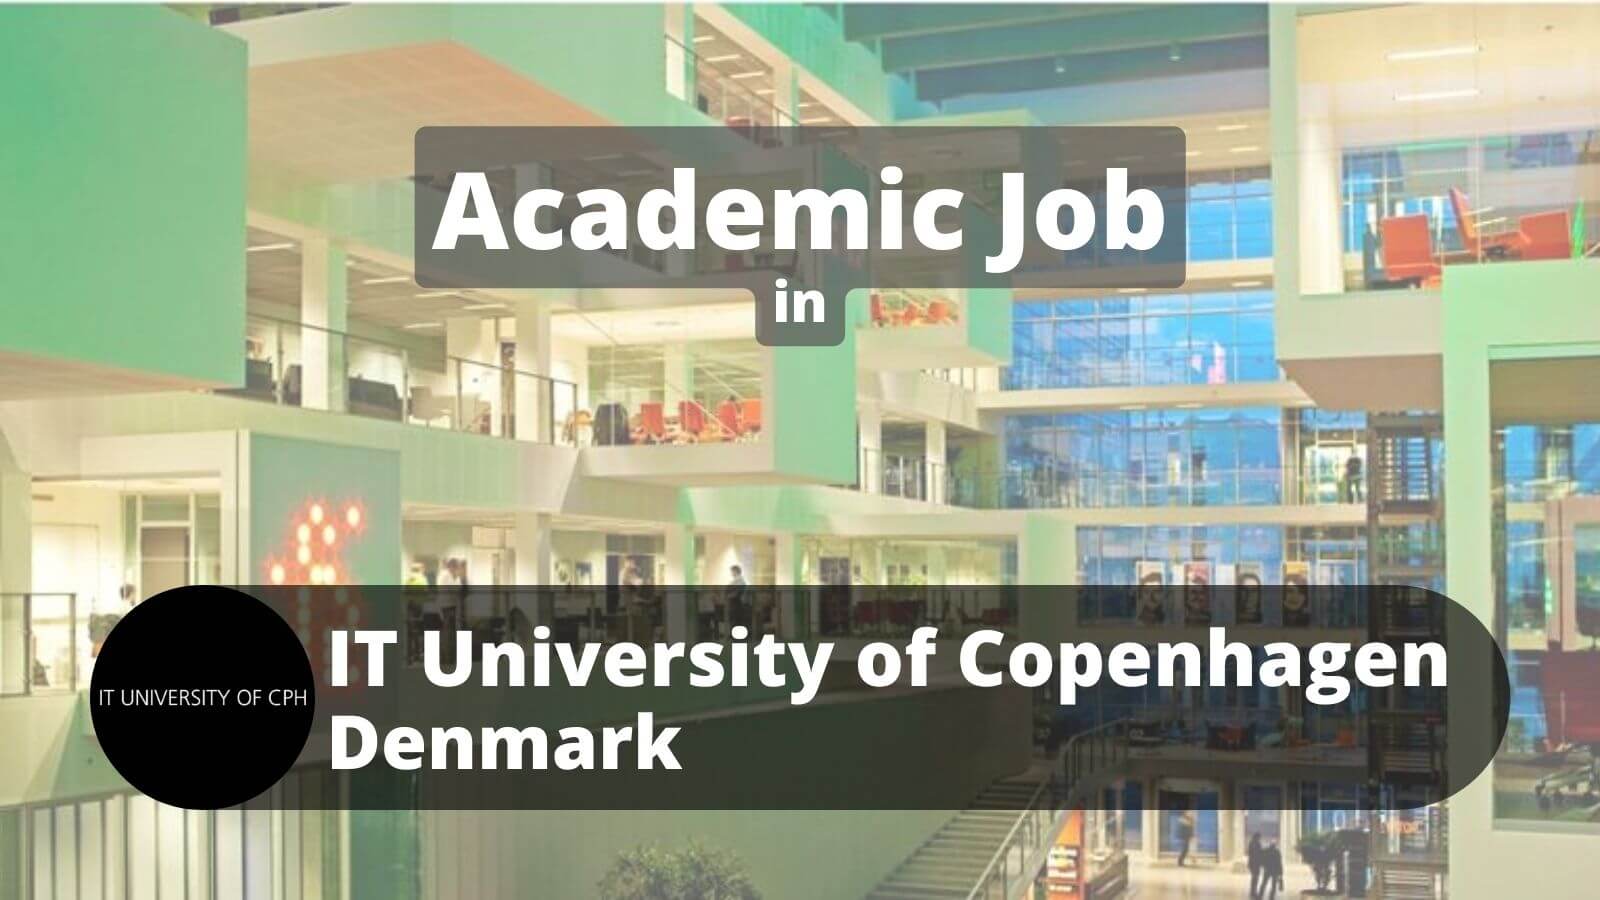 Academic job IT University of Copenhagen Denmark